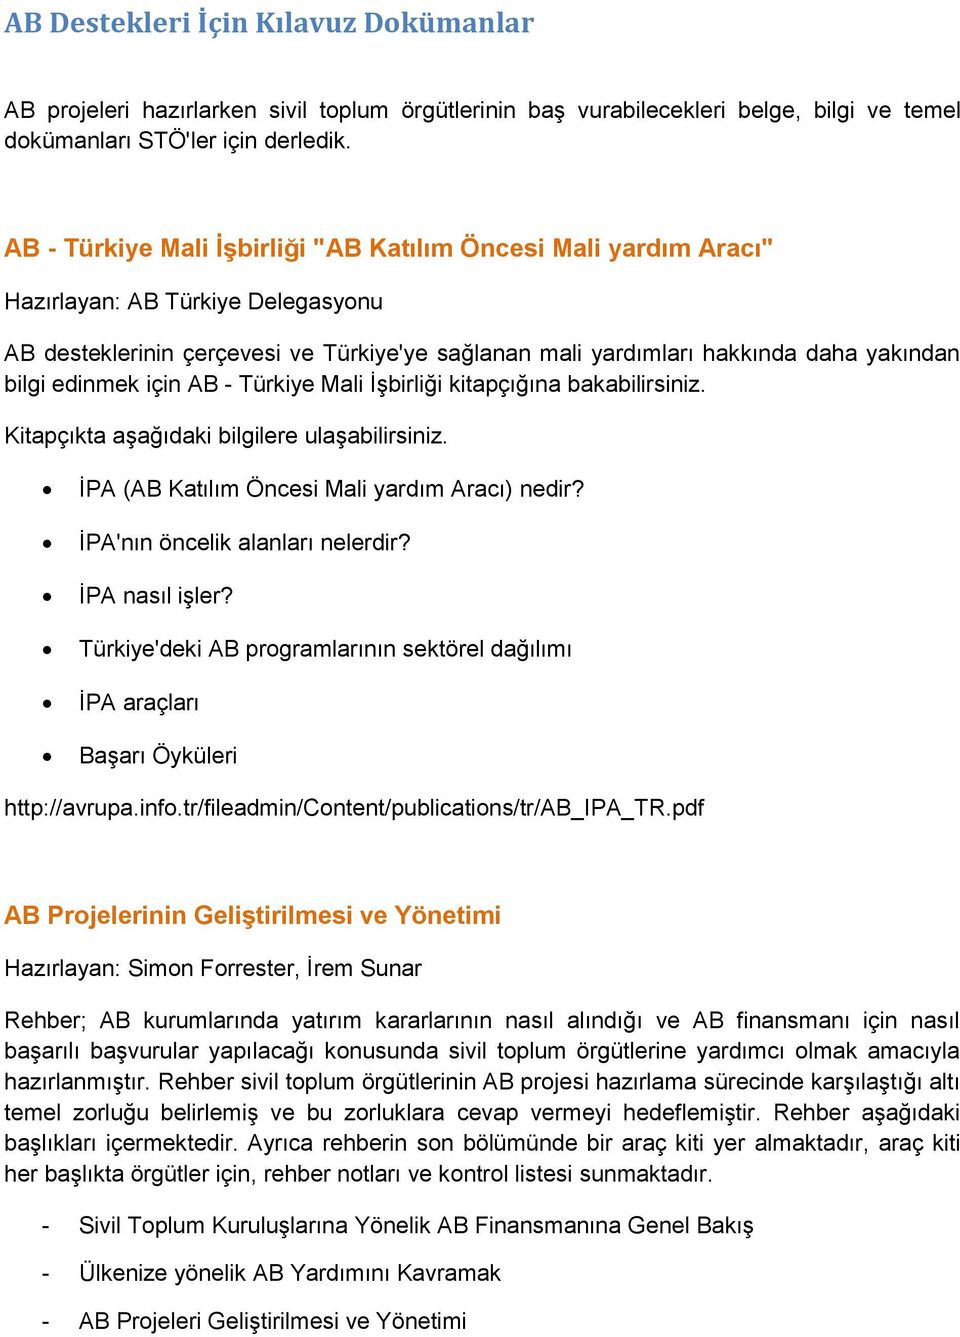 edinmek için AB - Türkiye Mali İşbirliği kitapçığına bakabilirsiniz. Kitapçıkta aşağıdaki bilgilere ulaşabilirsiniz. İPA (AB Katılım Öncesi Mali yardım Aracı) nedir? İPA'nın öncelik alanları nelerdir?